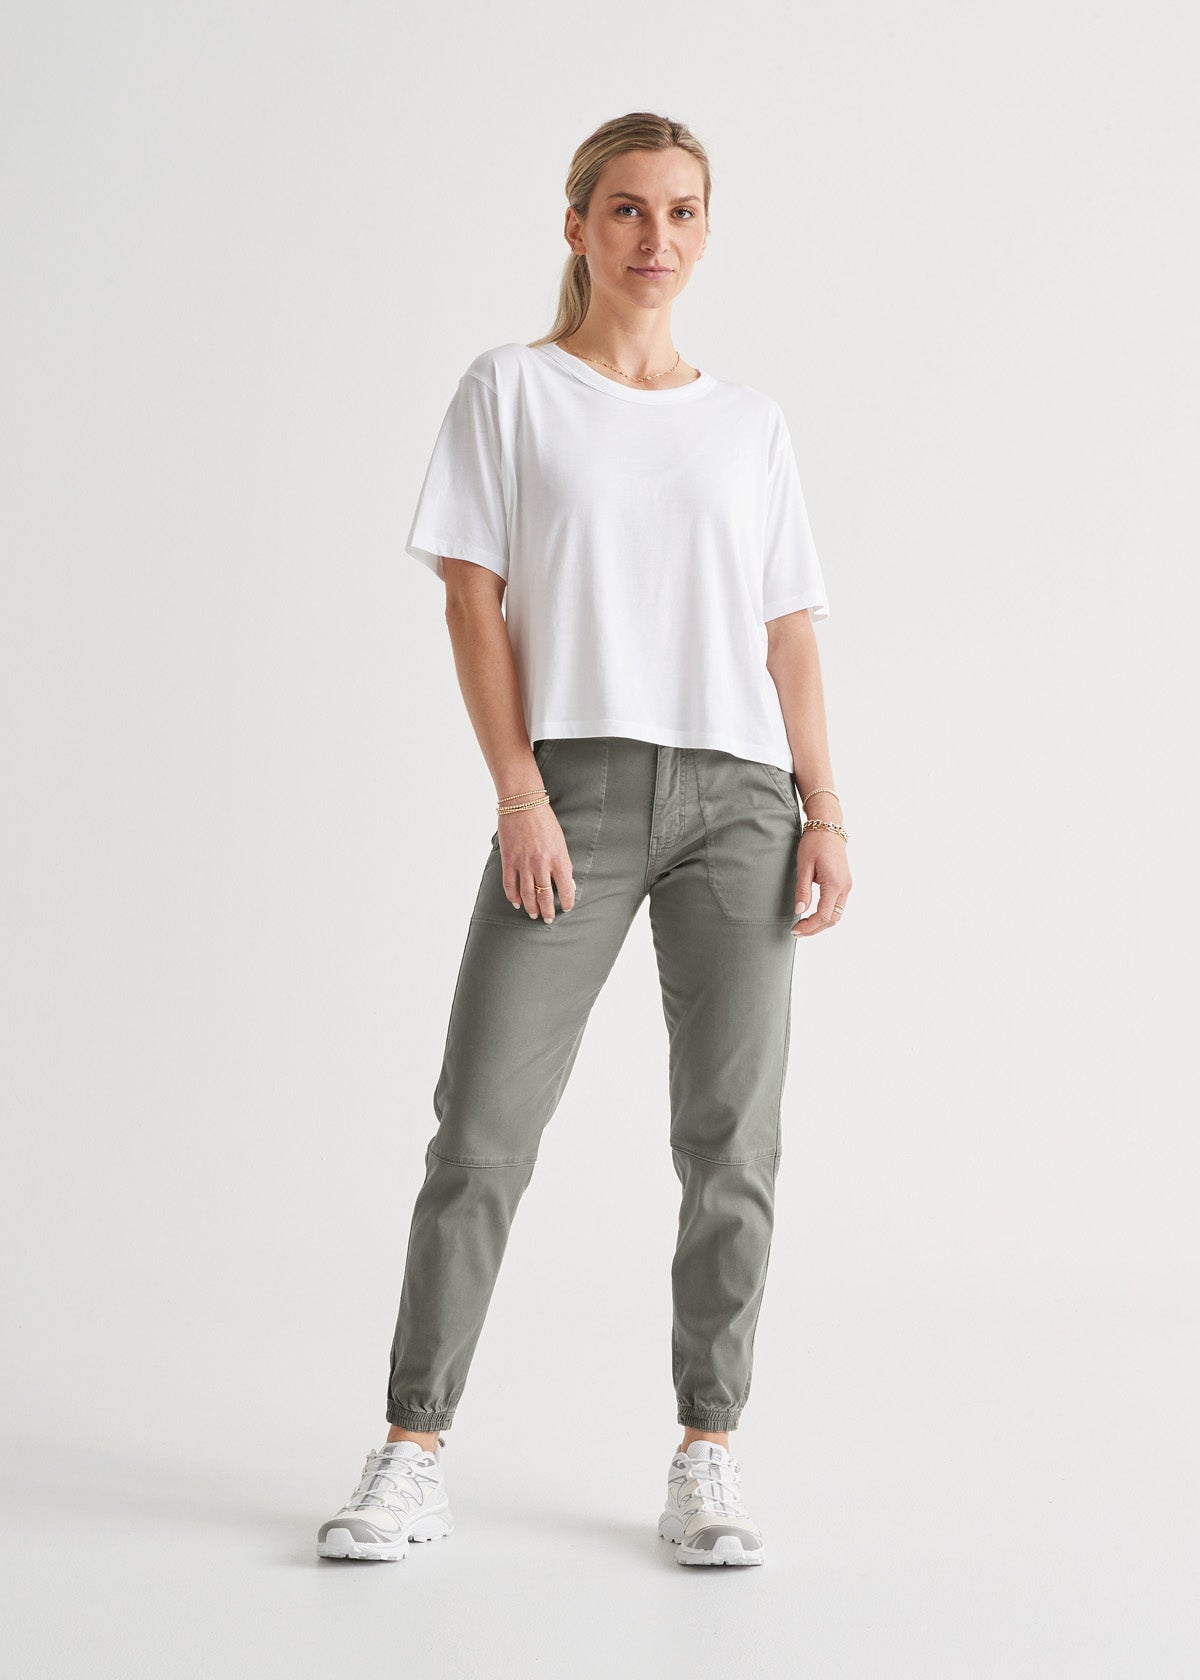 MONTREZ Jogger Fit Women Grey Jeans - Buy MONTREZ Jogger Fit Women